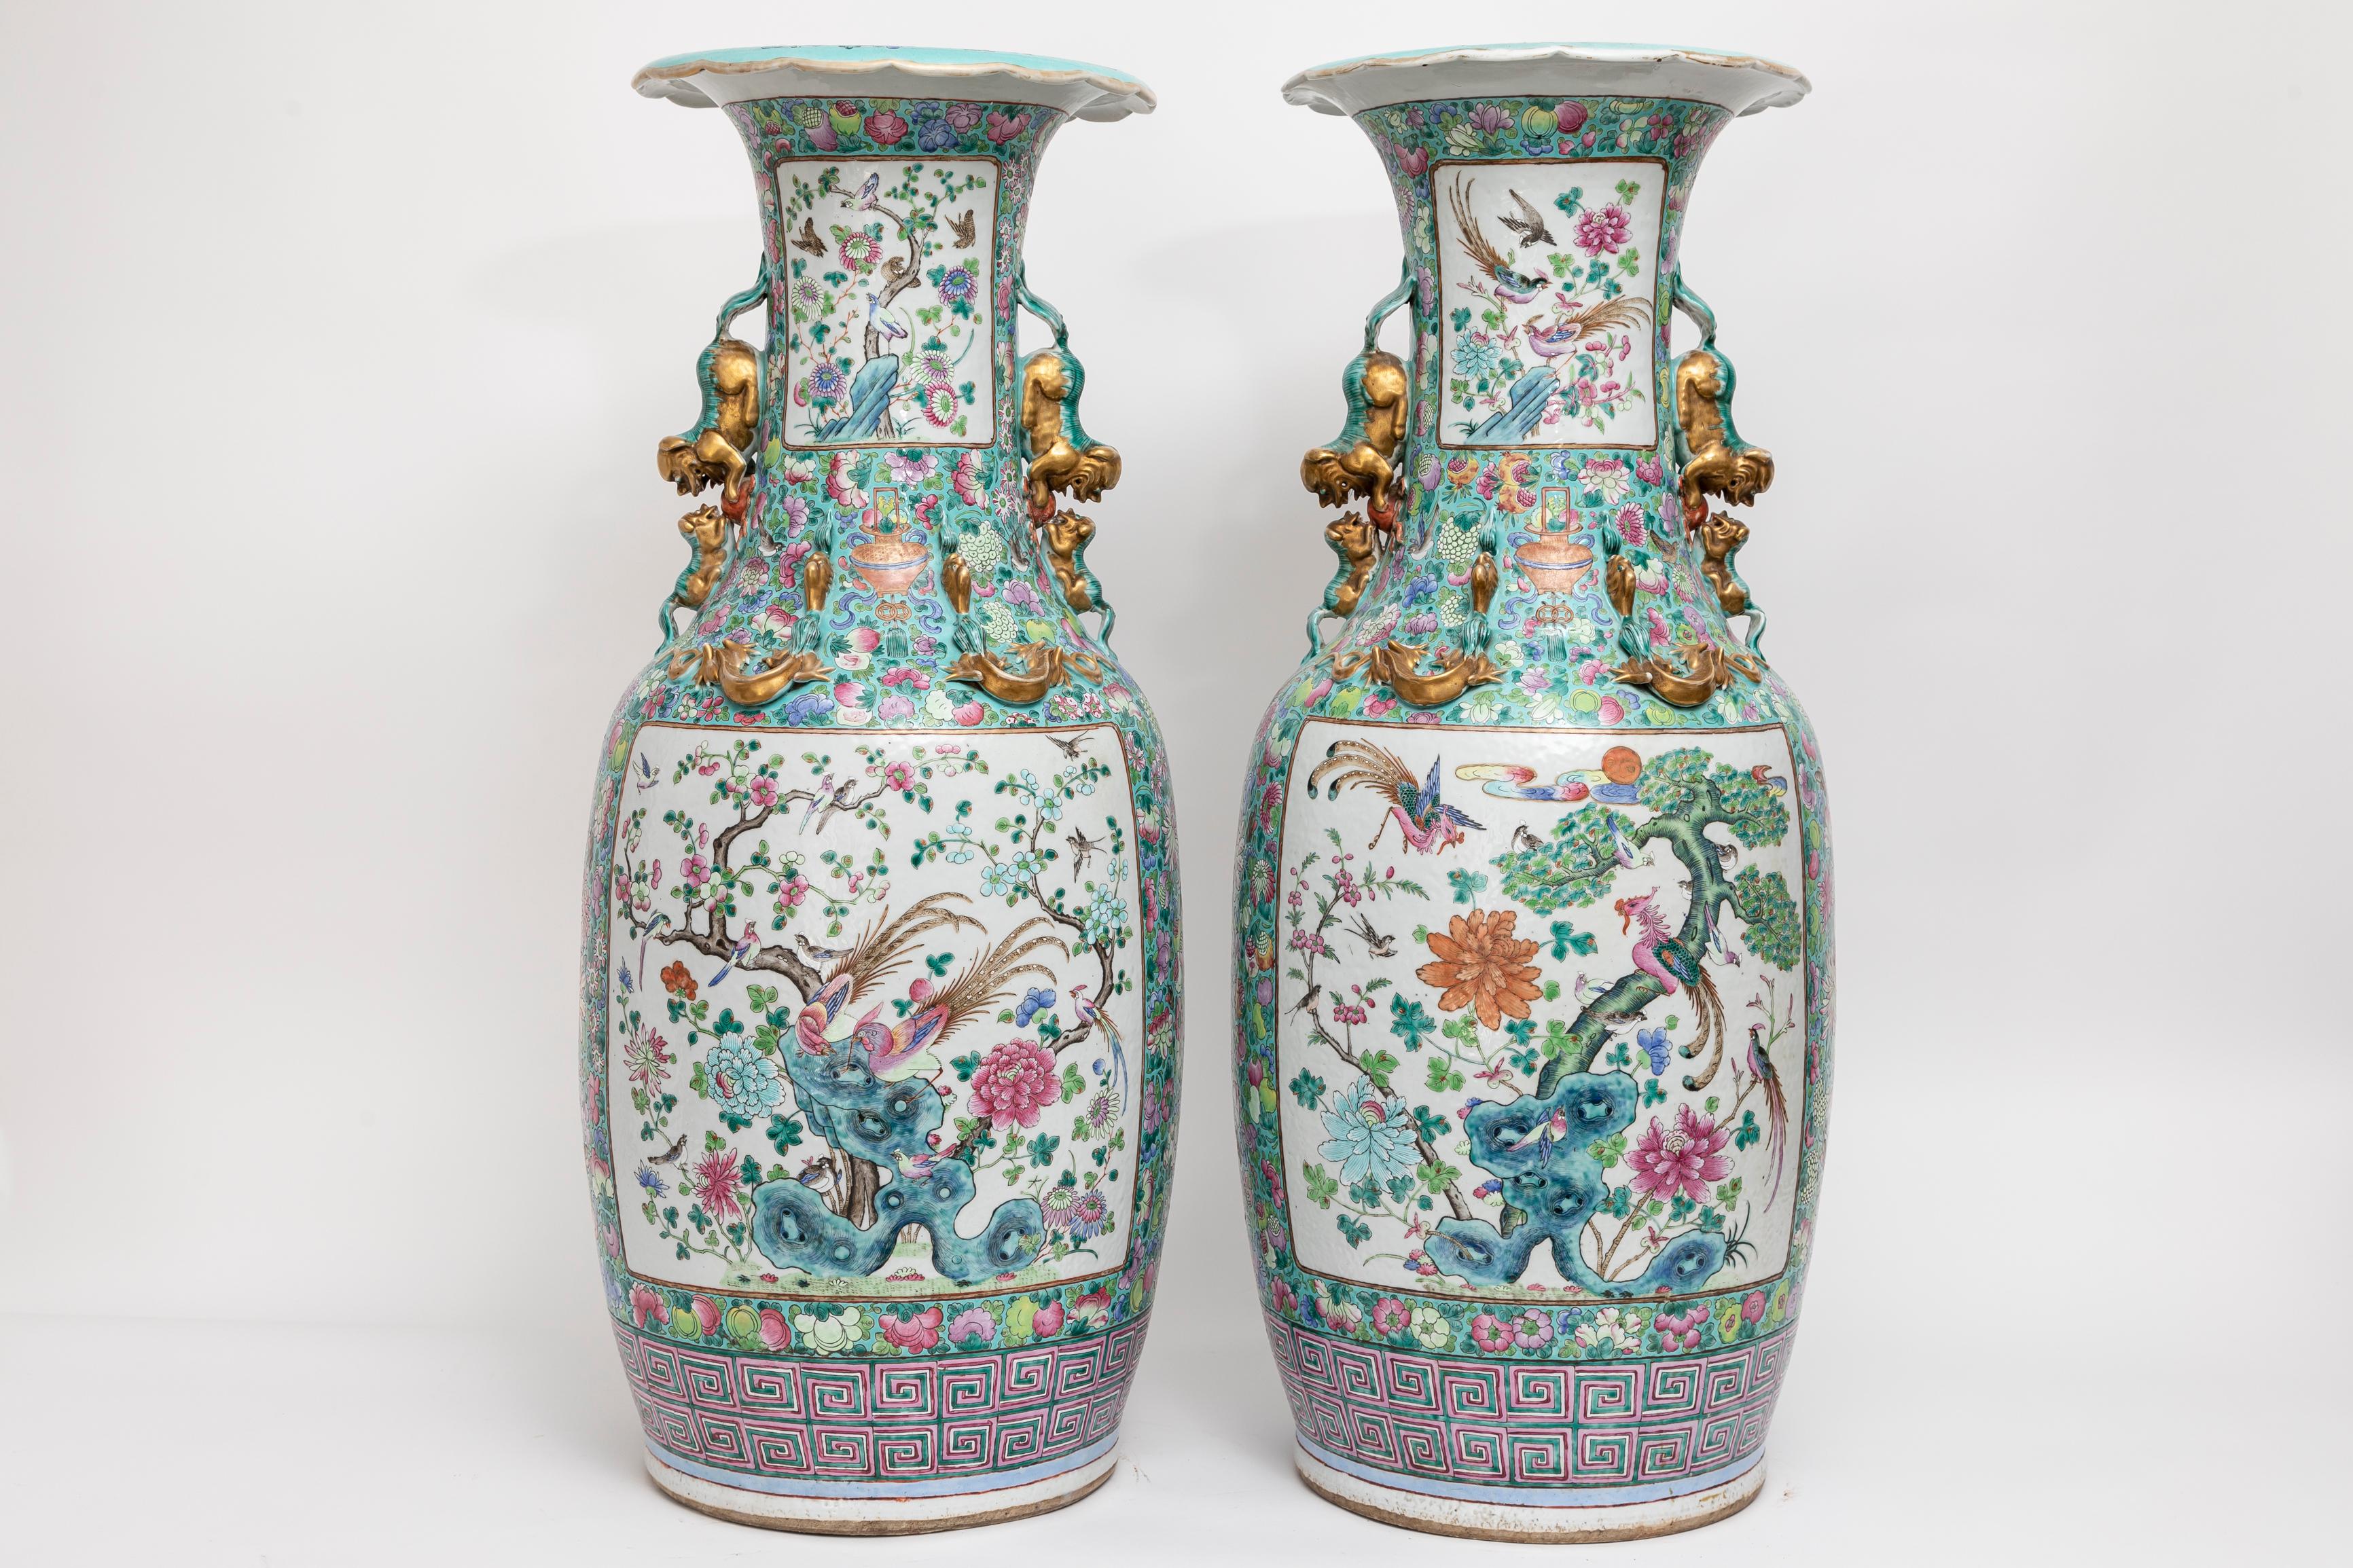 Exquisite Pair of Century Chinese Famille Rose dekoriert Porzellan Vasen mit markanten Foo Dog Griffe, 1800s.

Wir präsentieren ein beeindruckendes und opulentes Duo von antiken Famille Rose Vasen aus chinesischem Porzellan, die mit kunstvollen